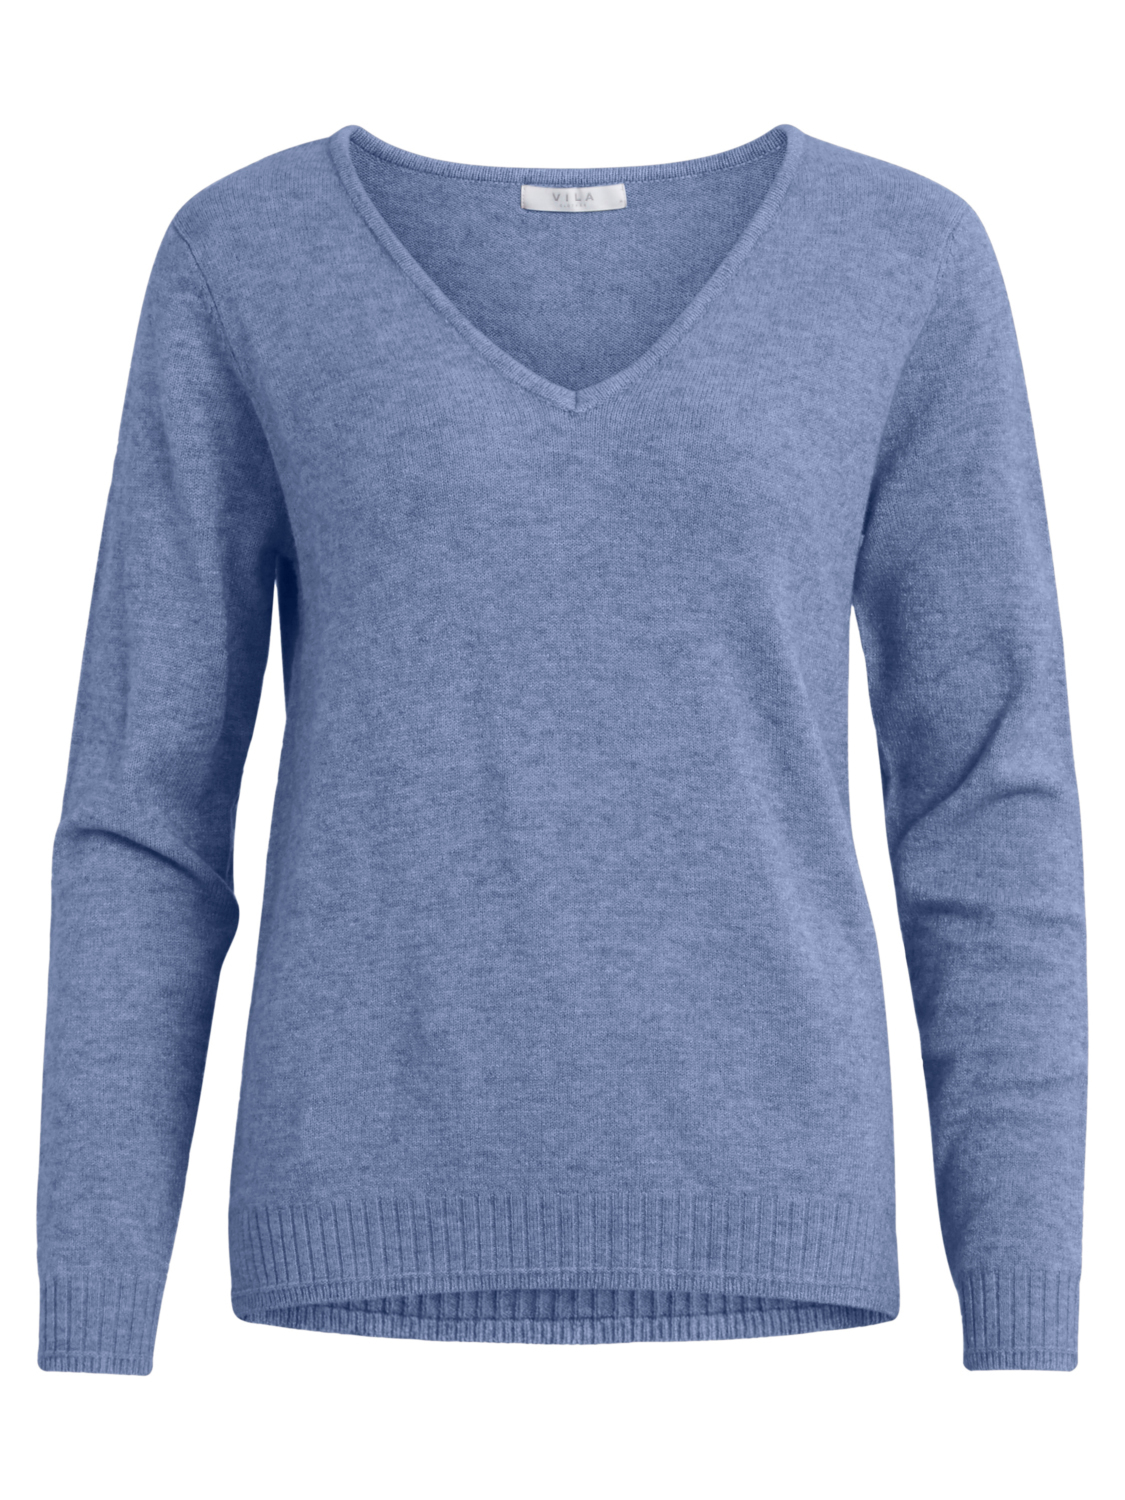 Swetry & dzianina Odzież VILA Sweter Ril w kolorze Podpalany Niebieskim 